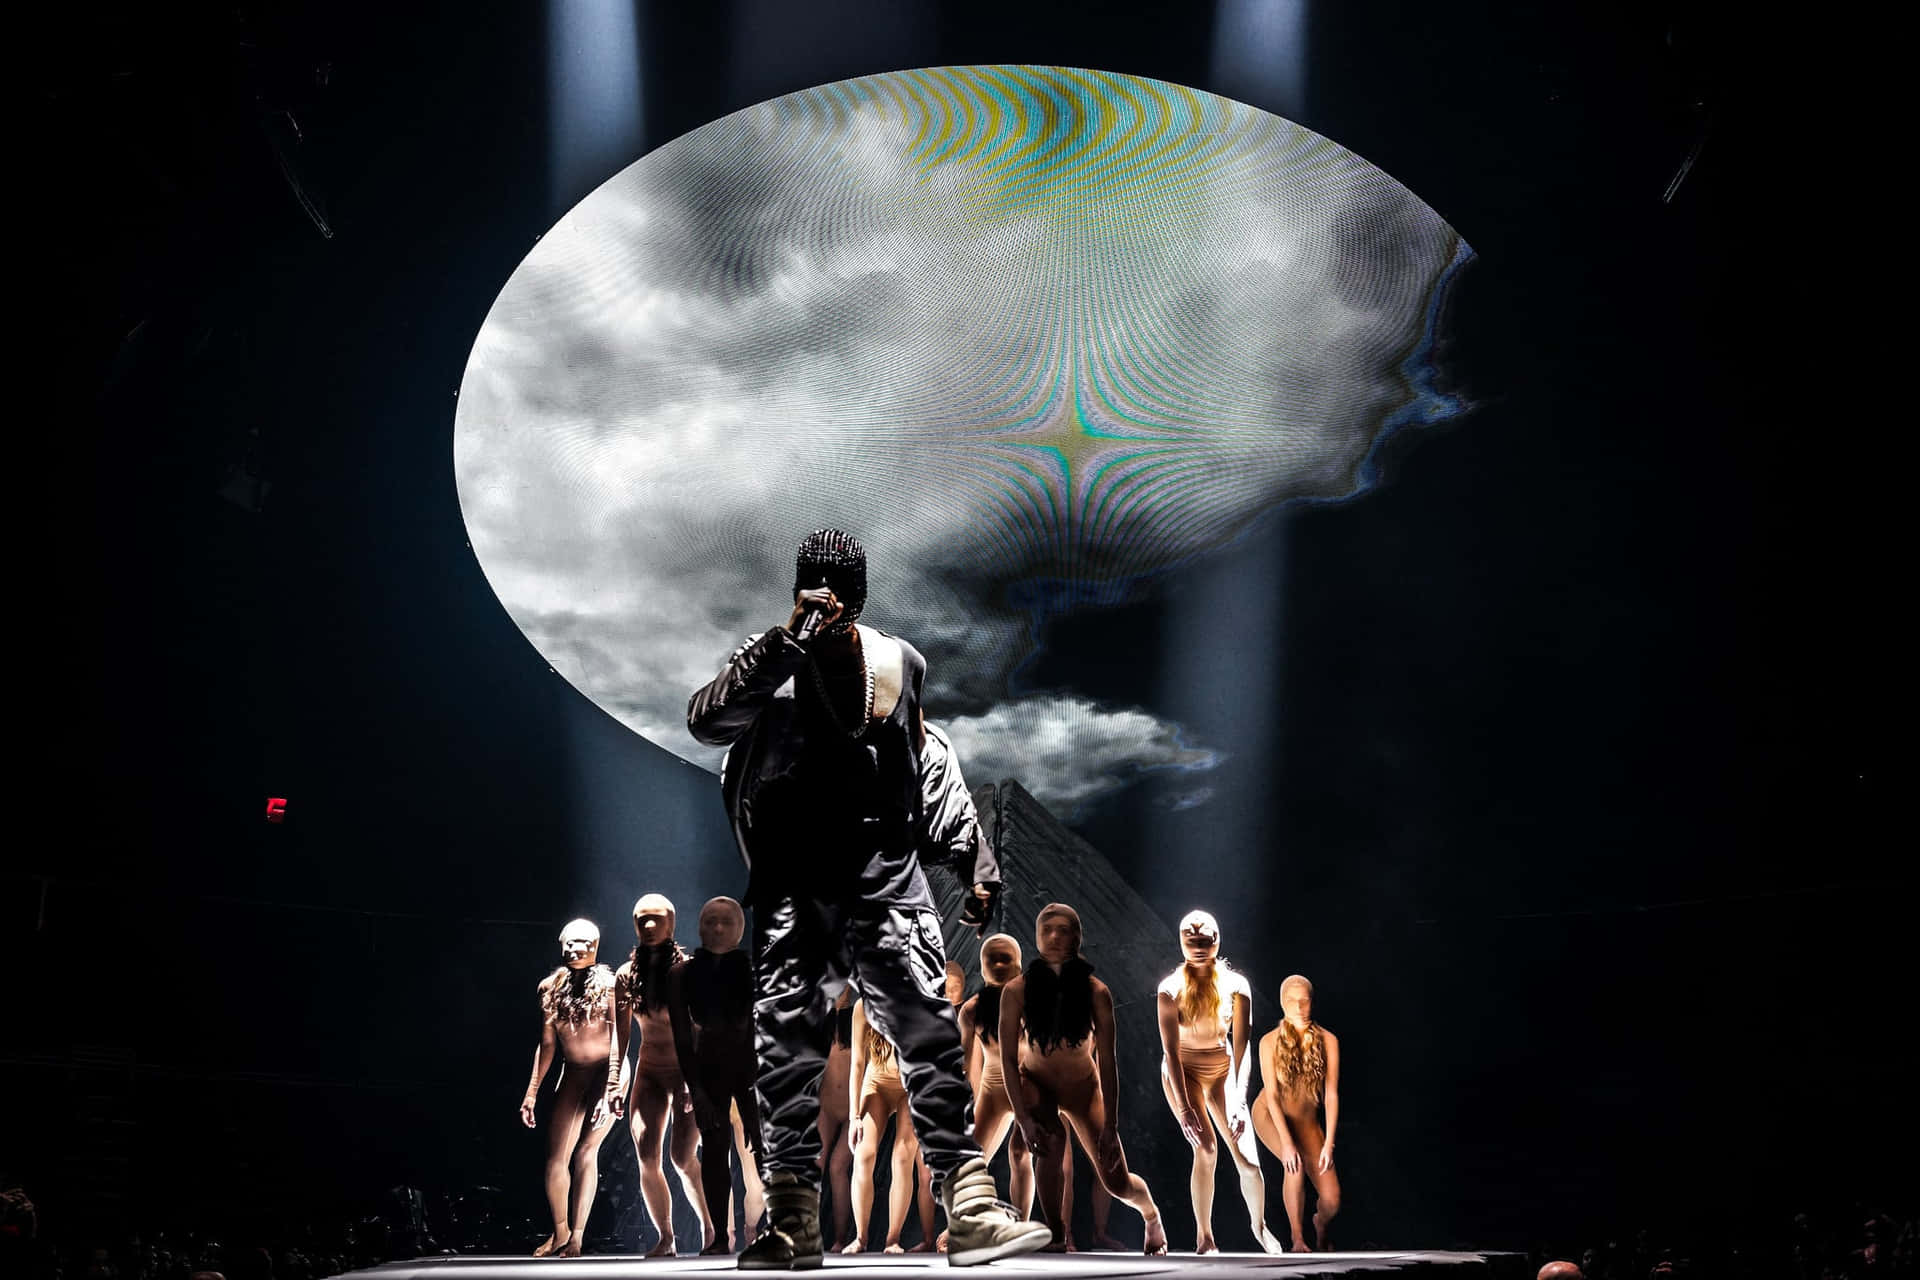 Kanye West i æraen af Yeezus. Wallpaper